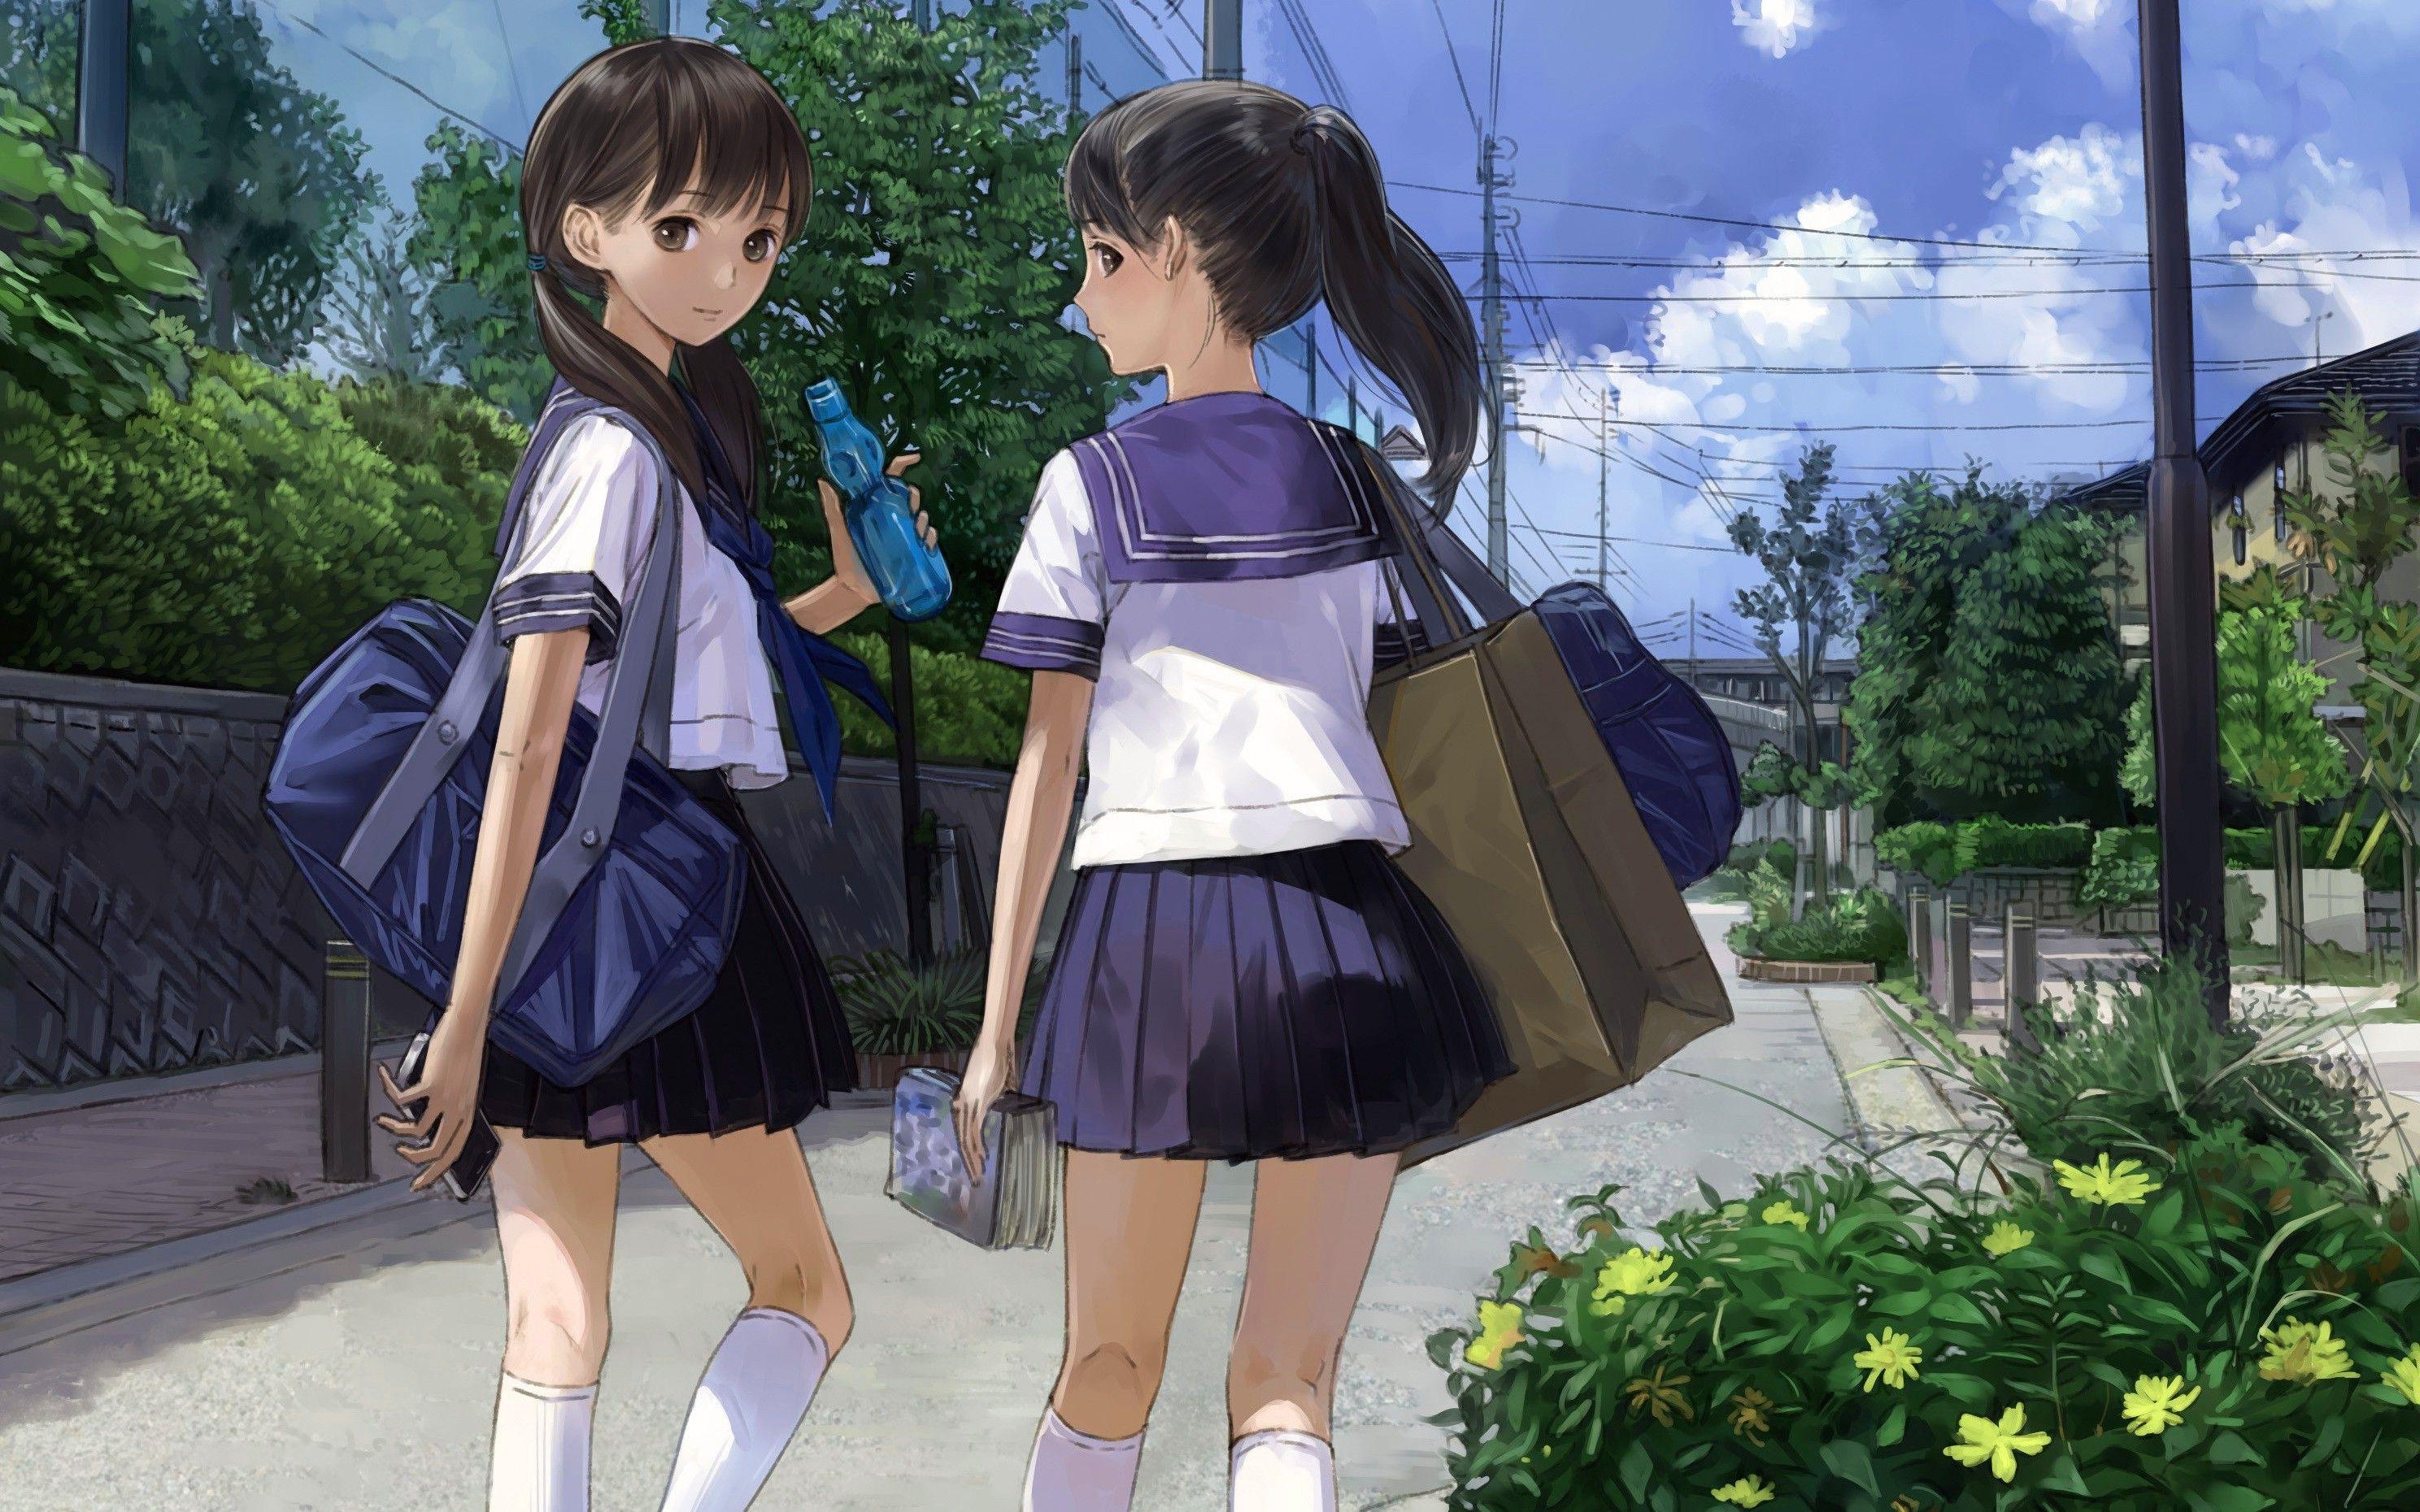 Best Of School Girl Anime Wallpaper